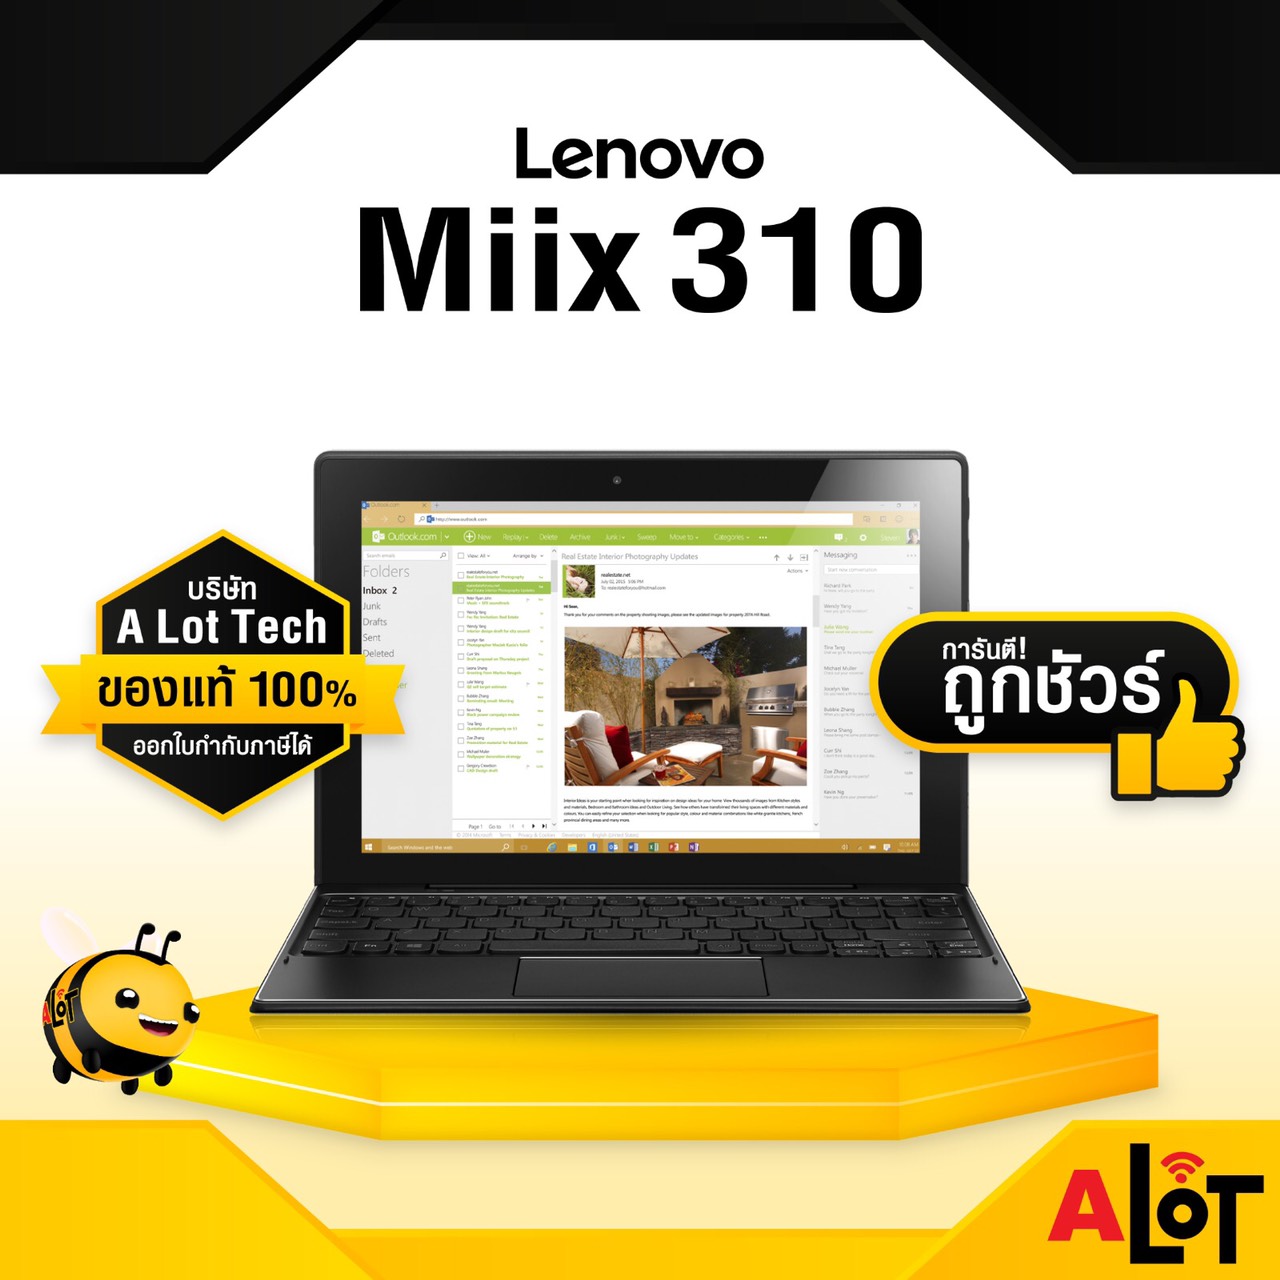 [ ของแท้ ราคาพิเศษ ] Lenovo ideapad MIIX 310 โน๊ตบุ๊ค 2in1 แล็ปท็อป ราคาถูก # A lot